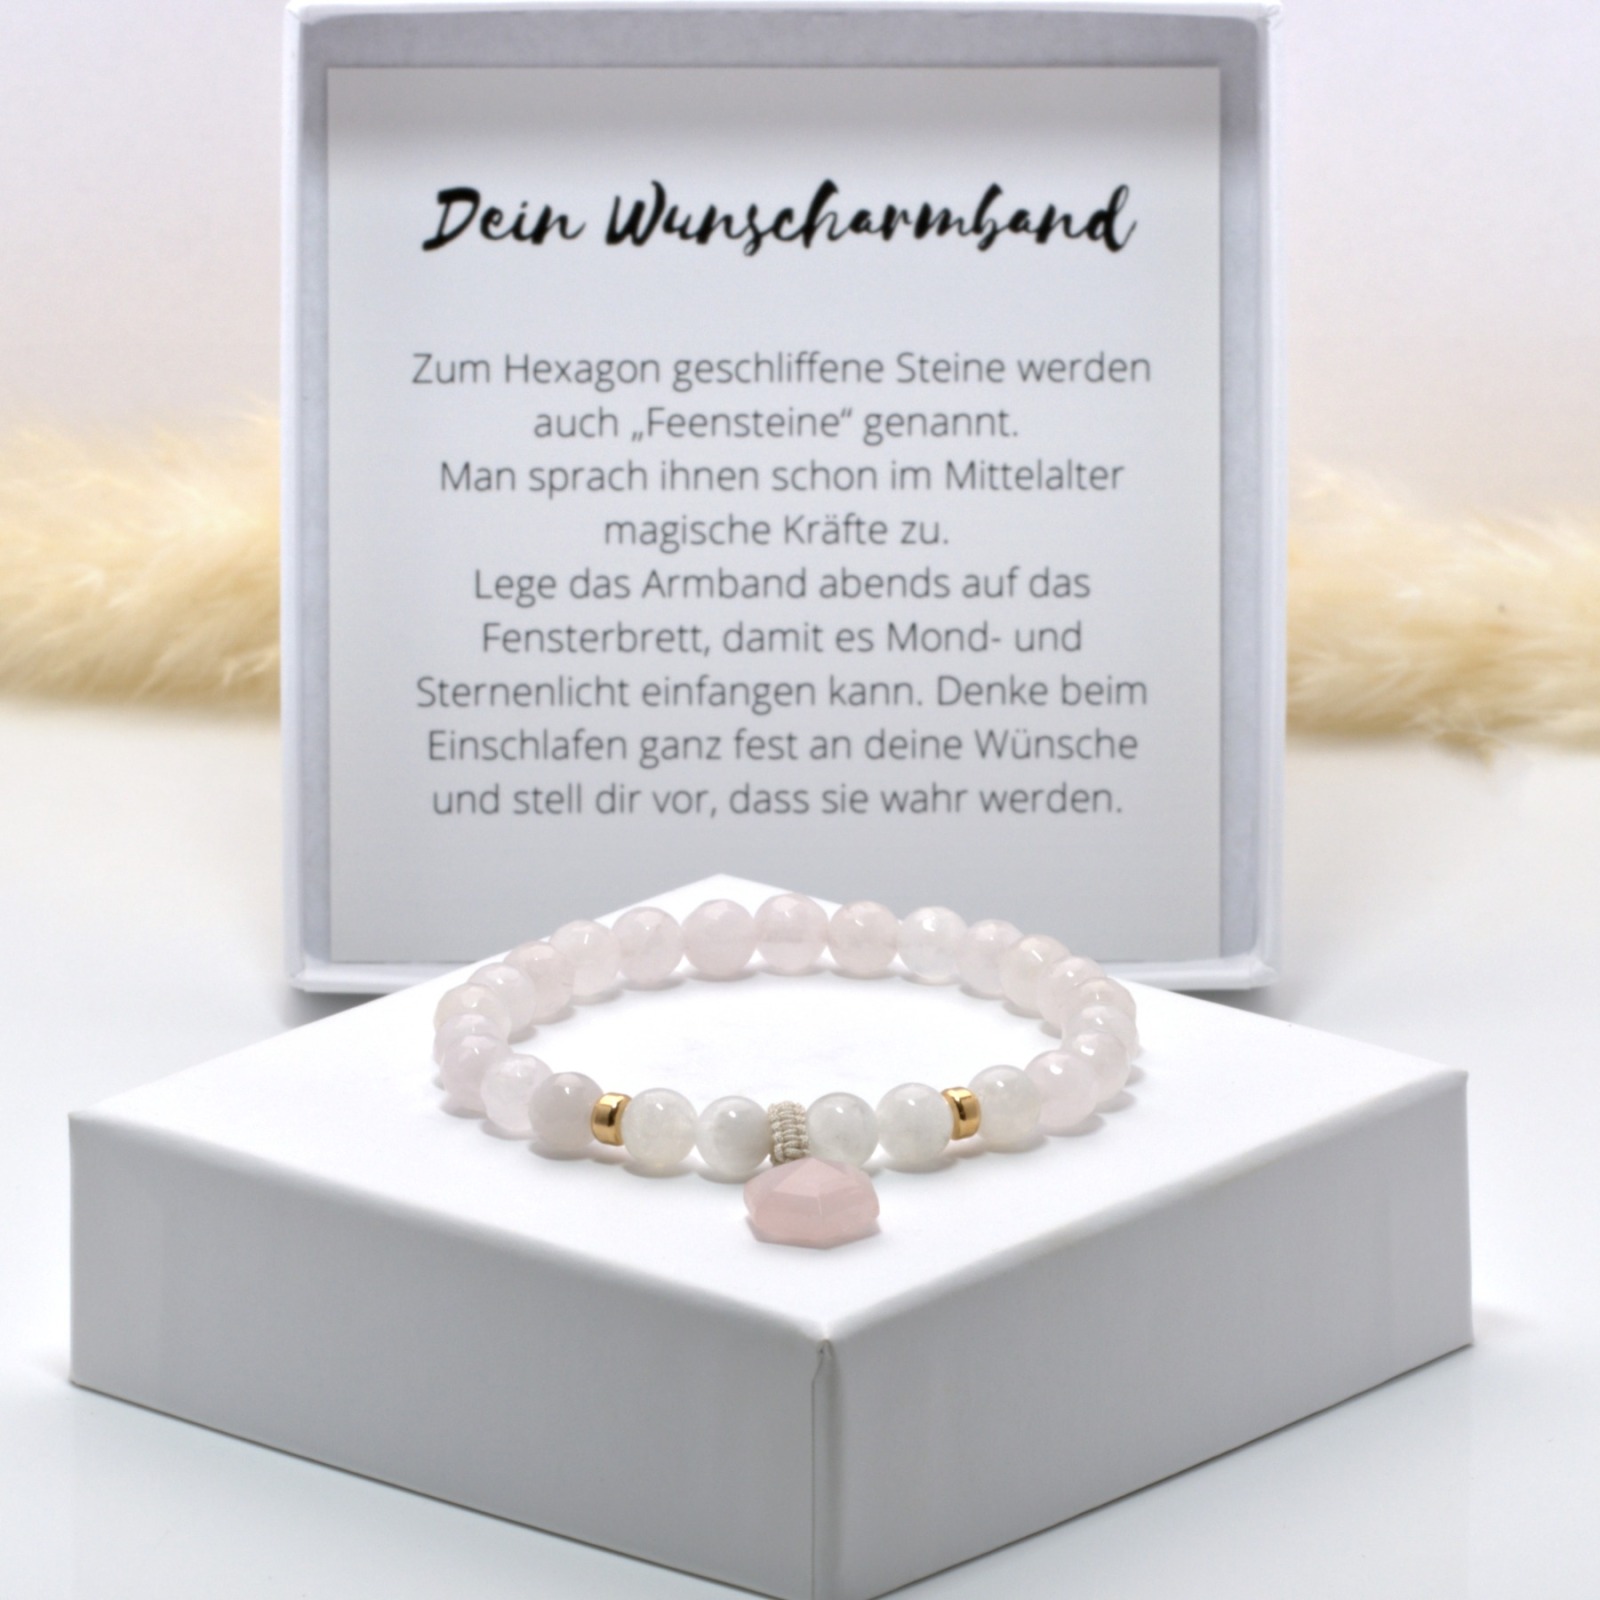 Wunscharmband aus Rosenquarz und Mondstein, Anhänger Hexagon, schönes Geschenk 3